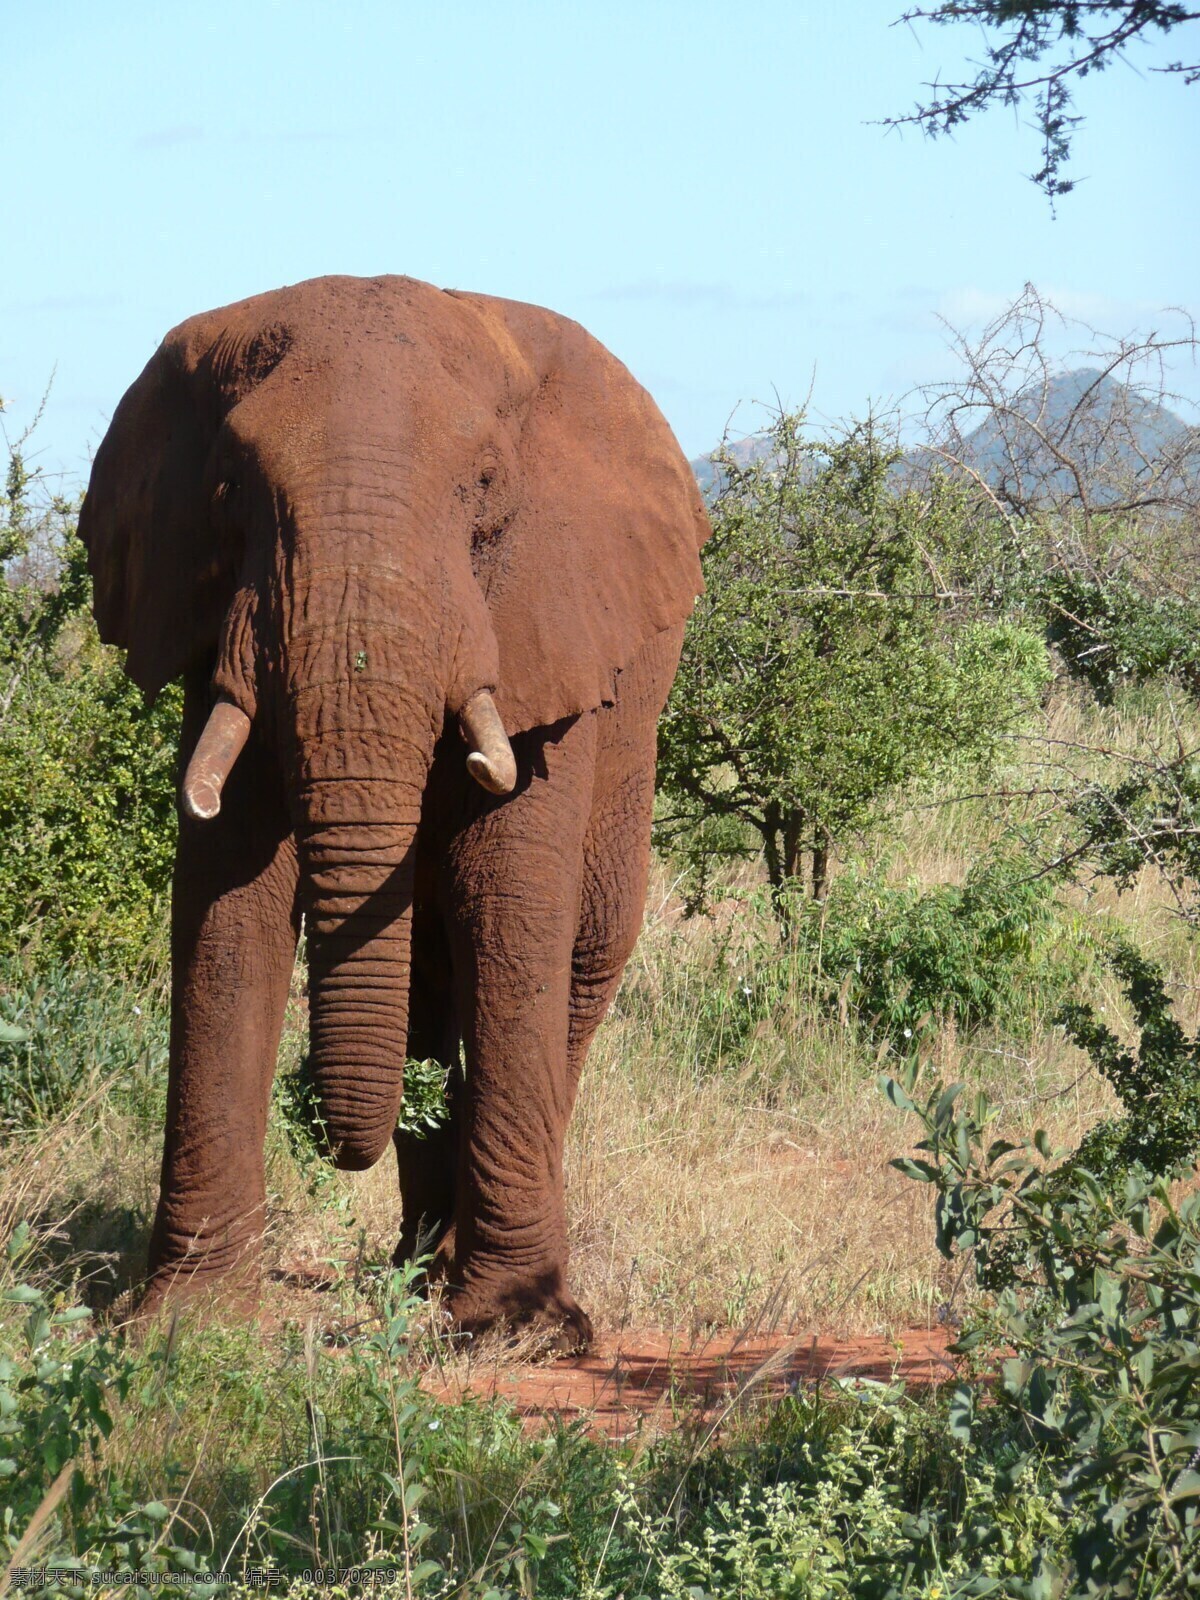 草原上的大象 大象 野象 非洲大象 草原动物 食草动物 非洲动物 狂野的非洲 野生动物 保护动物 动物世界 非洲草原 动物研究 地球动物 可爱的家园 环保问题 公益组织 生物世界